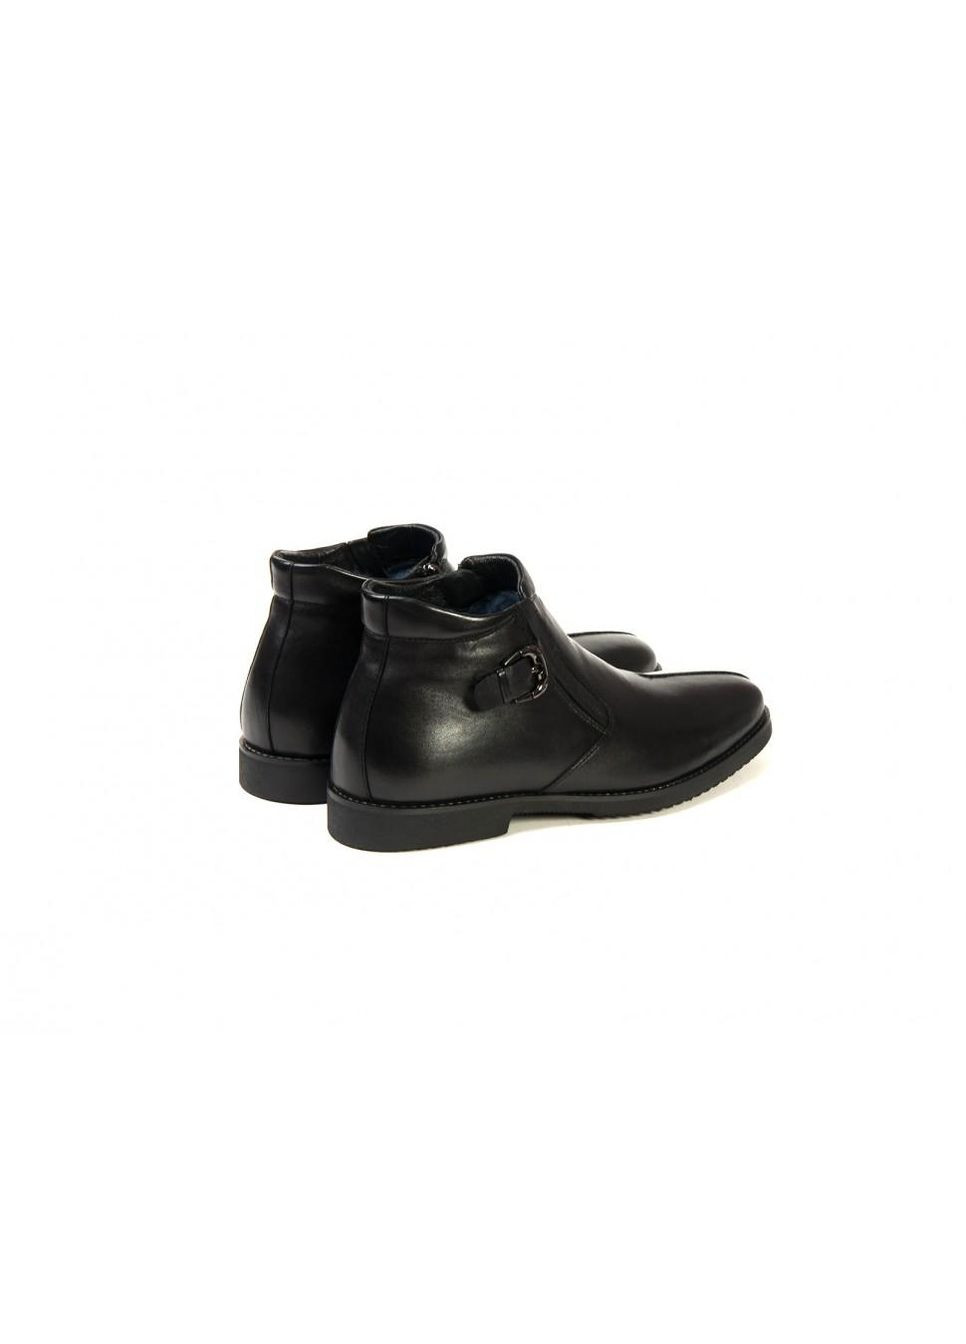 Черные ботинки 7134179 цвет черный Carlo Delari